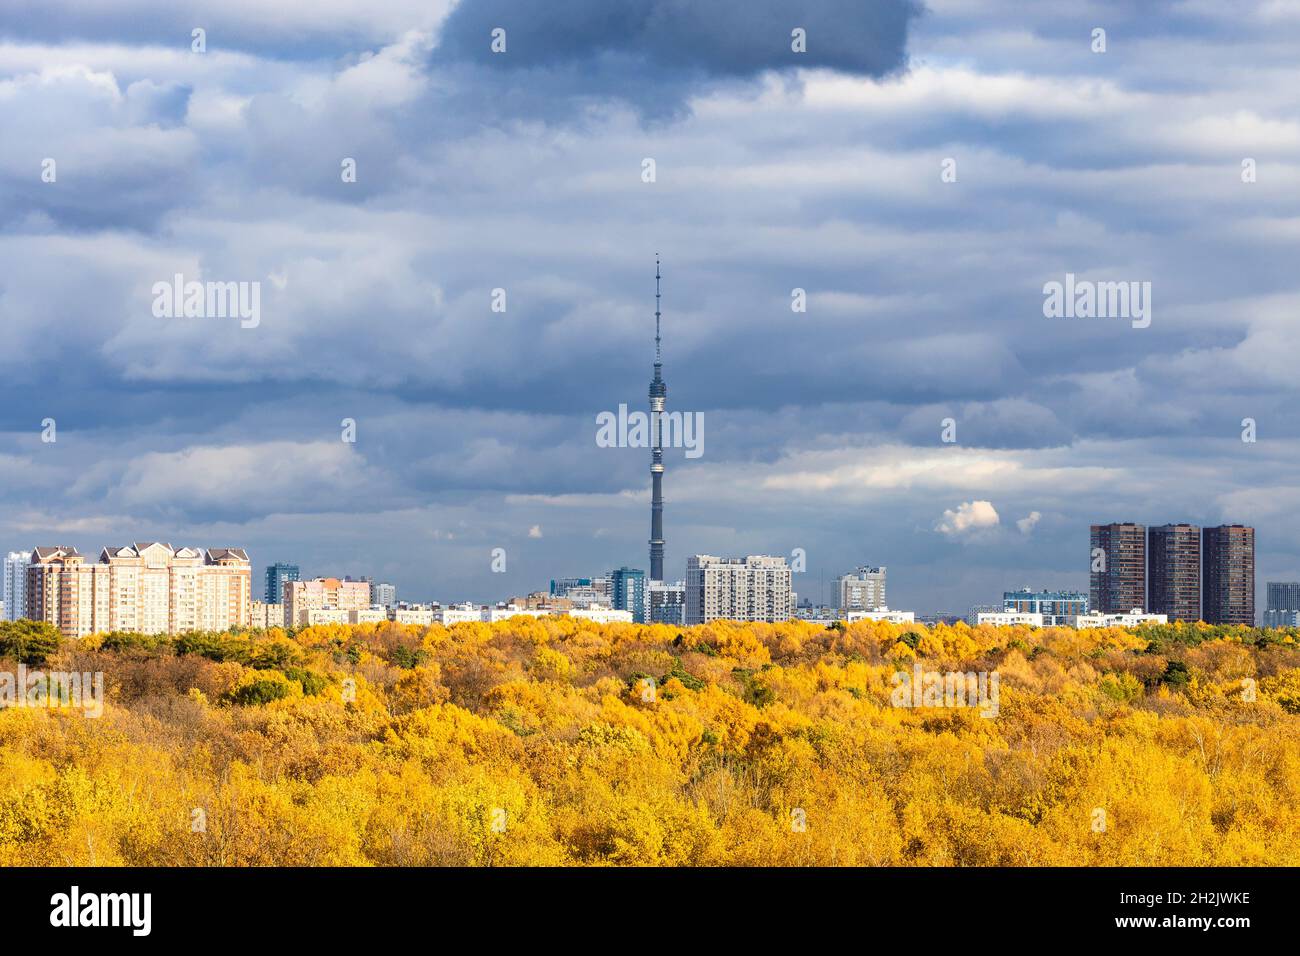 Le nuvole di pioggia grigio scuro nel cielo blu sopra la città con la torre della televisione e la foresta gialla illuminata dal sole il giorno d'autunno prima della pioggia Foto Stock